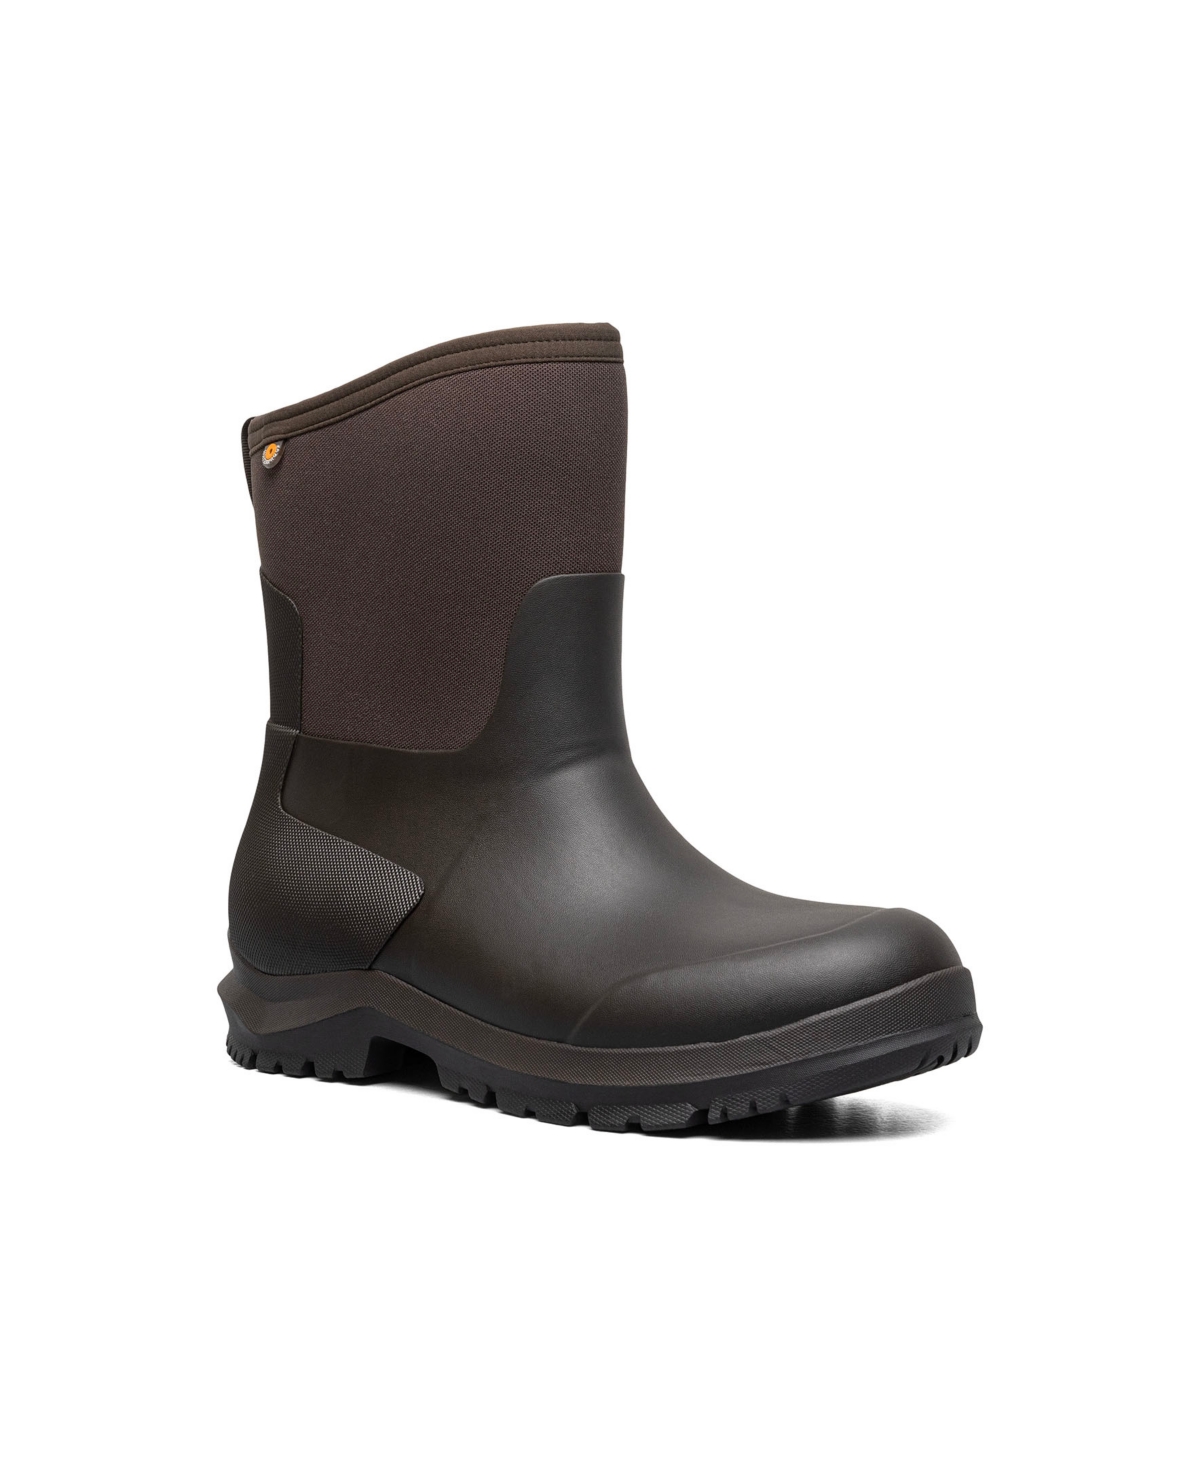 Men's Sauvie Basin Ii Slip-Resistant Boot - Brown